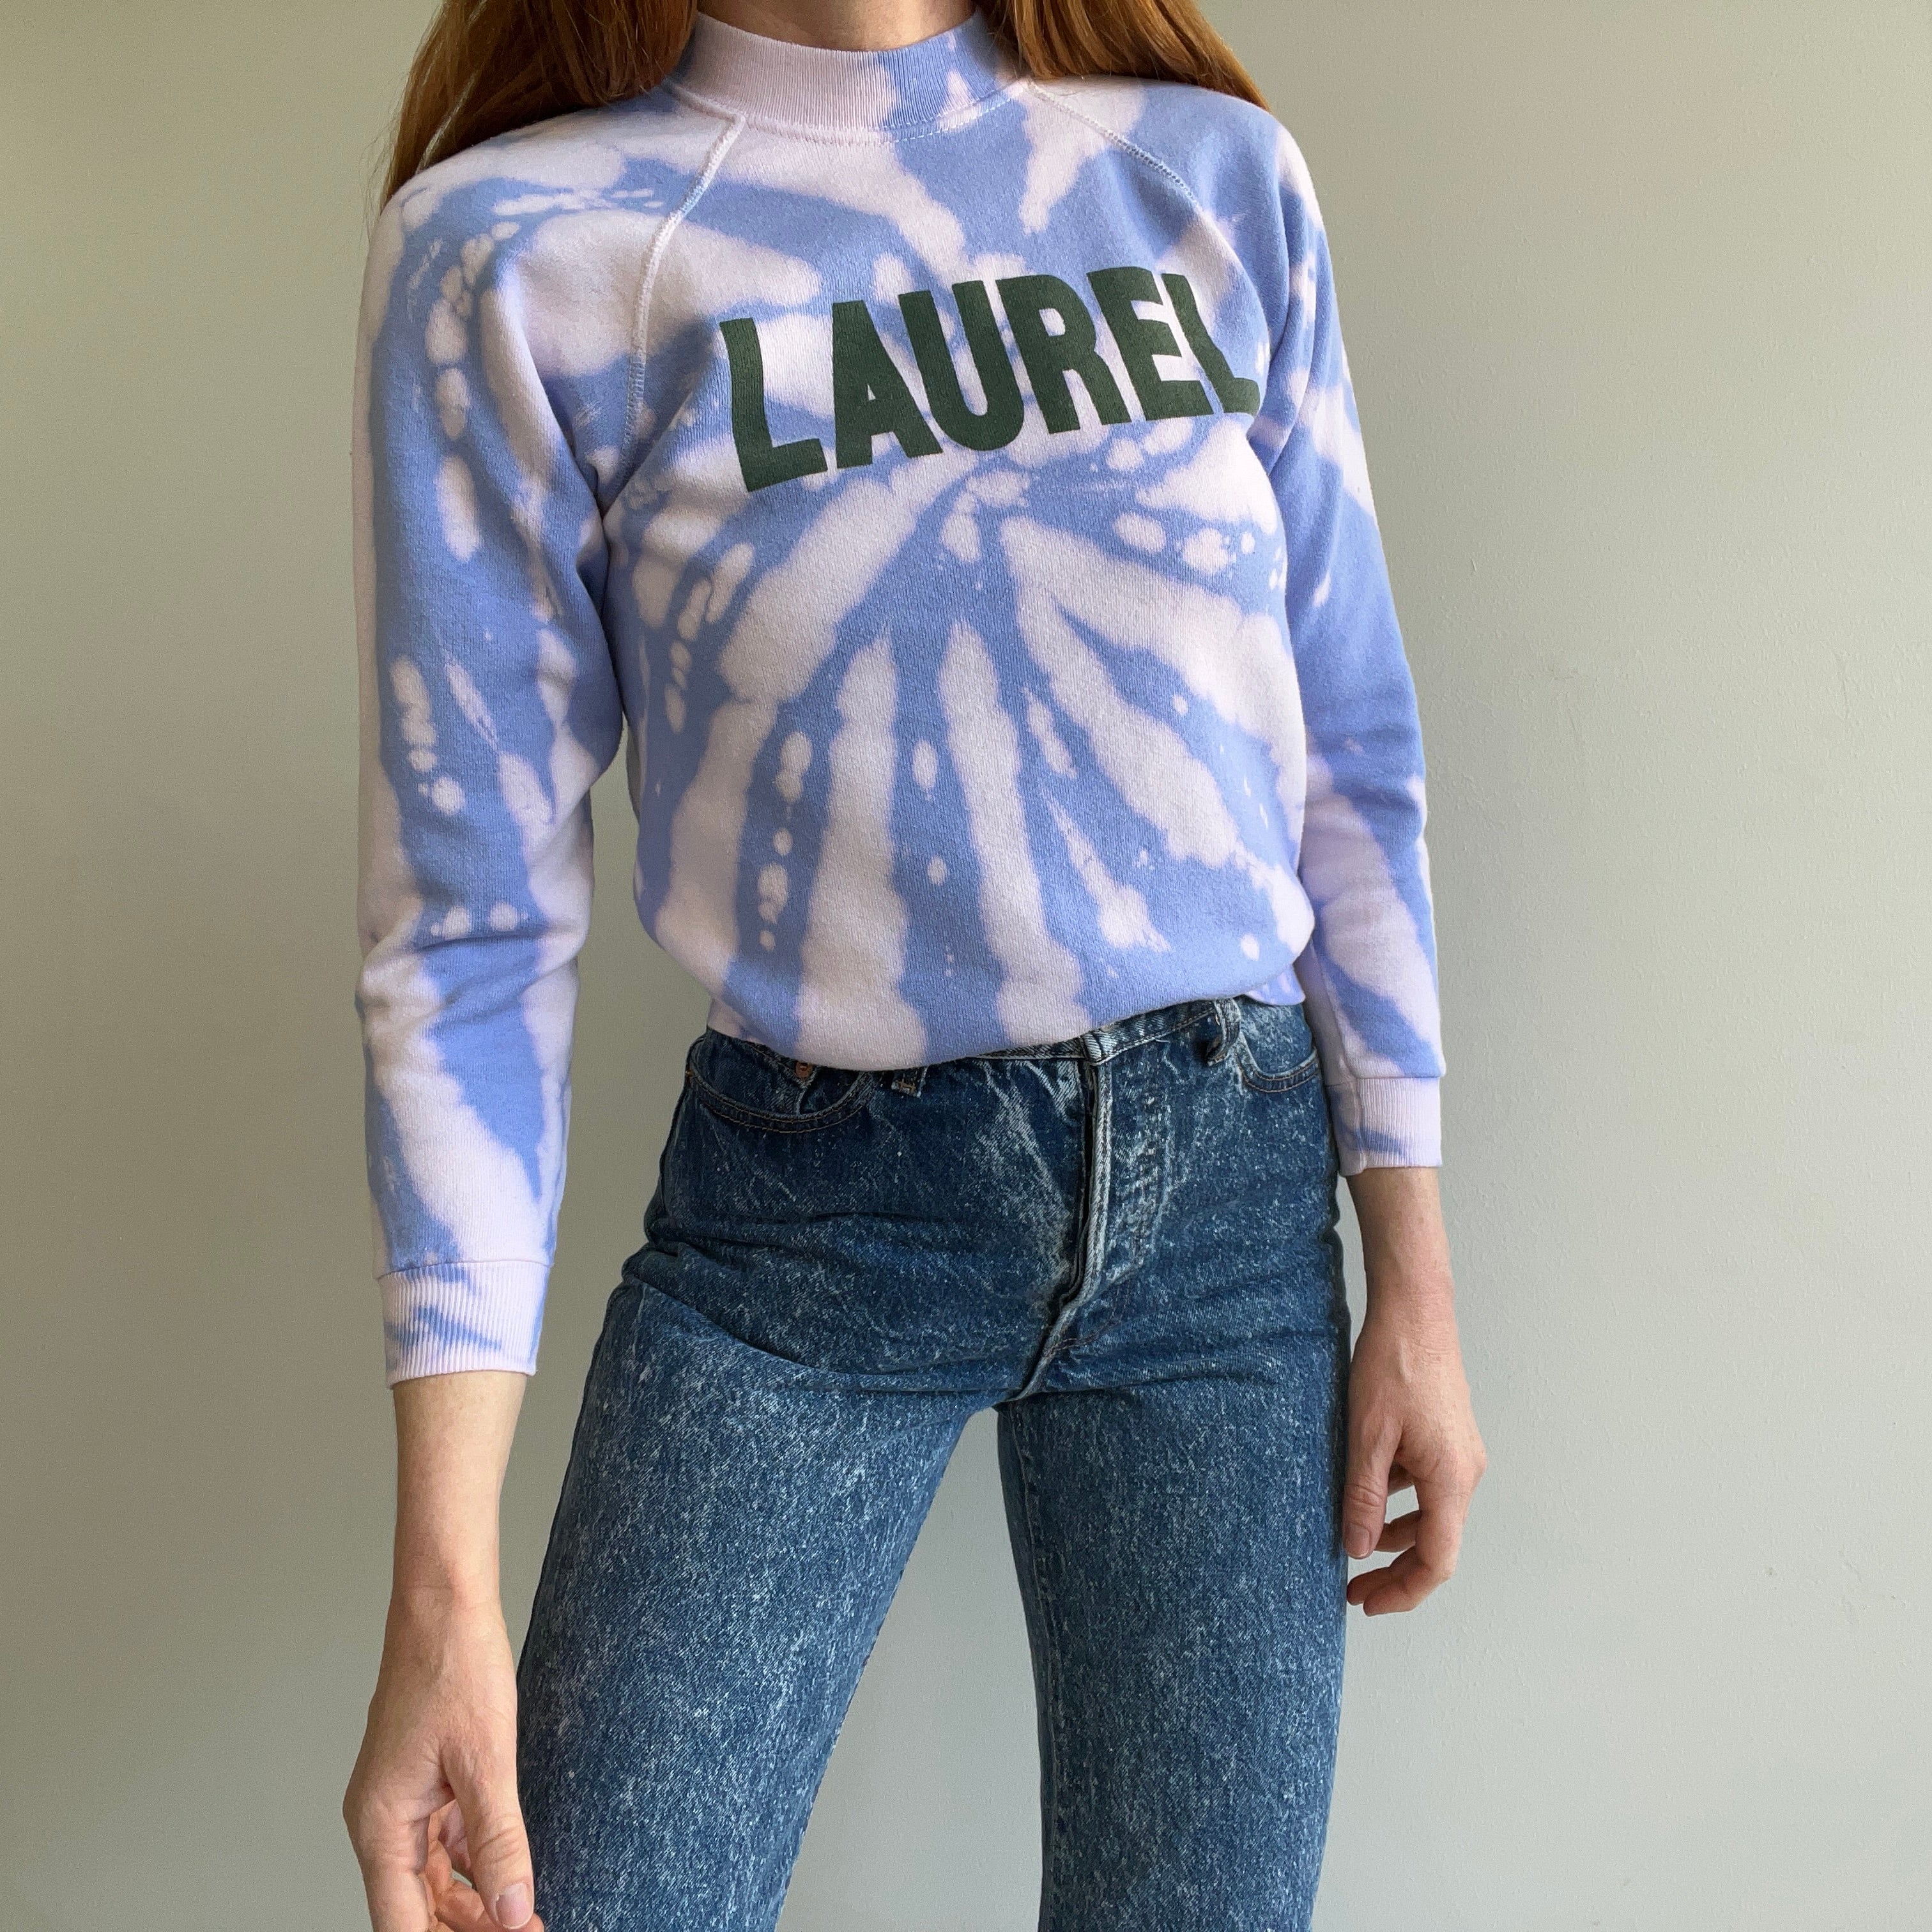 Sweat-shirt tie-dye Laurel des années 1980